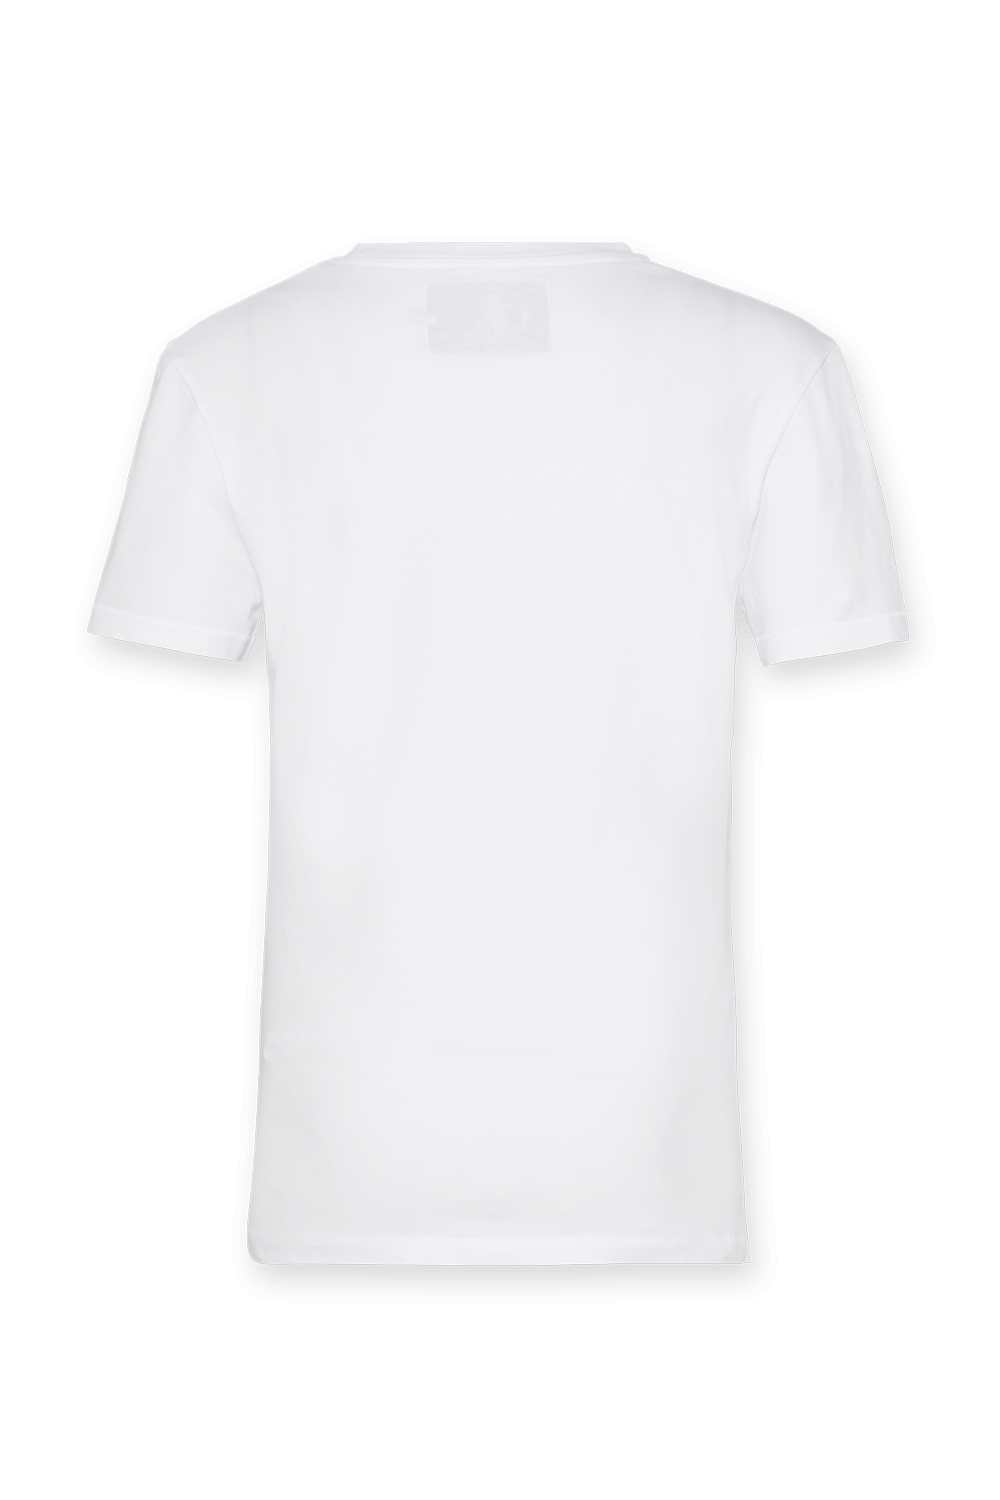 חולצת טי עם לוגו מונוגרמי CALVIN KLEIN